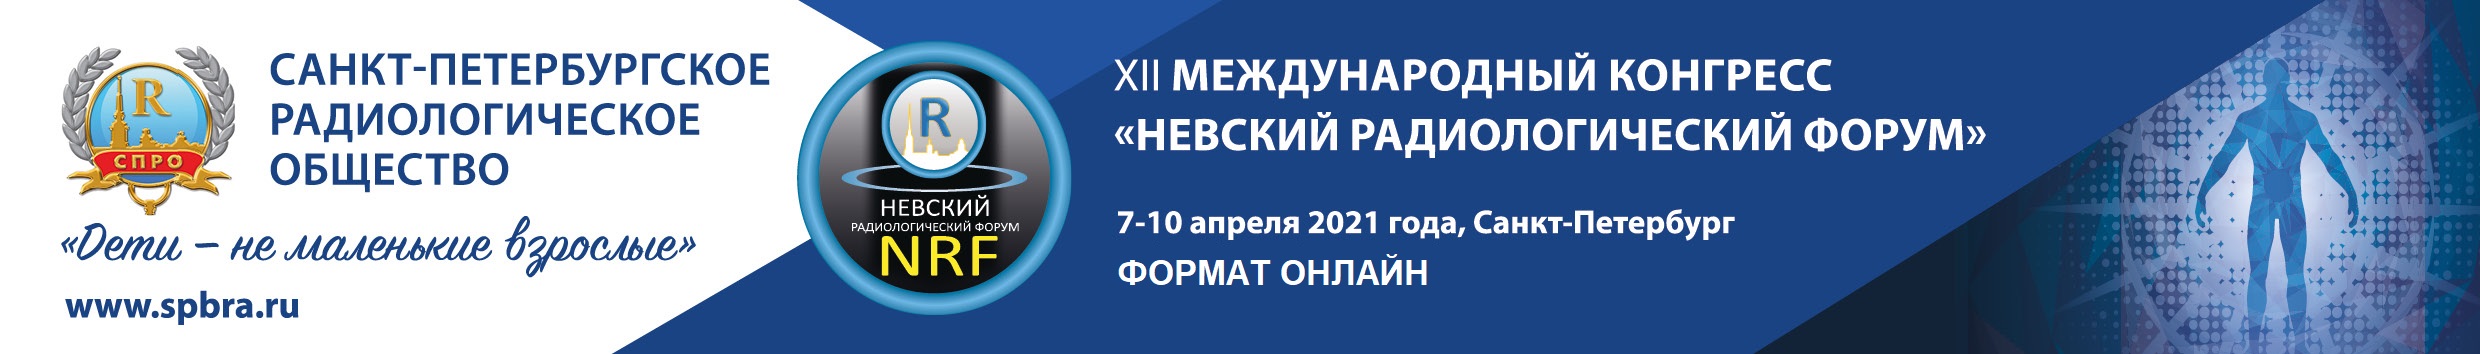 ХII Международный конгресс "Невский радиологический форум-2021"